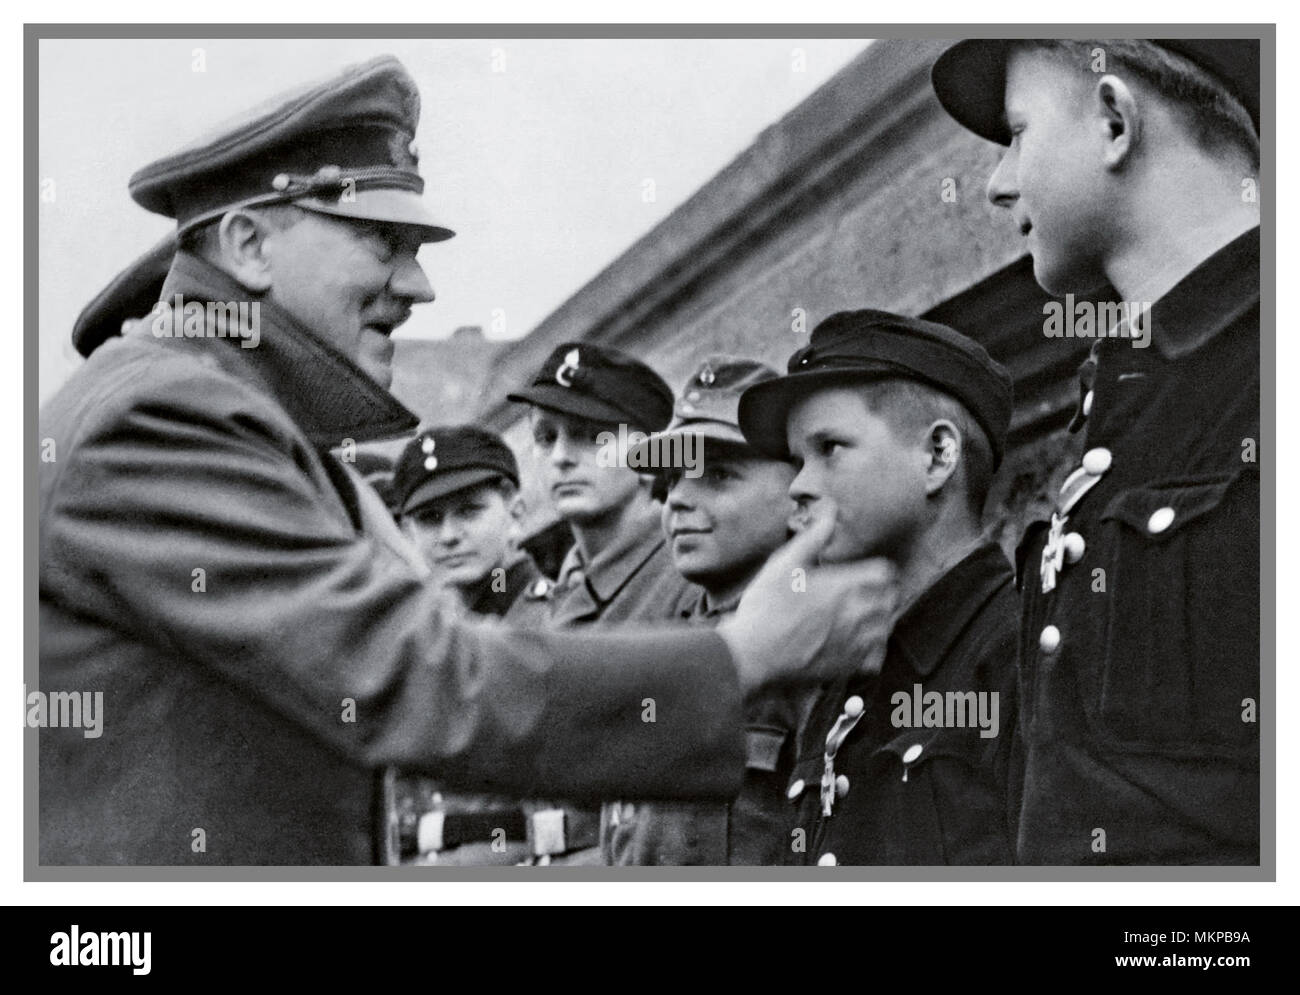 1945-vintage-german-ww2-propaganda-bild-ns-fuhrer-adolf-hitler-wahrscheinlich-machen-letzten-offentlichen-auftritt-ausserhalb-seiner-berliner-bunker-treffen-und-die-vergabe-von-medaillen-zu-treuen-vollig-fehlgeleiteten-hitler-jugend-mitglieder-jungen-gefuhllos-verwendet-als-kanonenfutter-gegen-russische-umzingelung-april-1945-ww2-mkpb9a.jpg